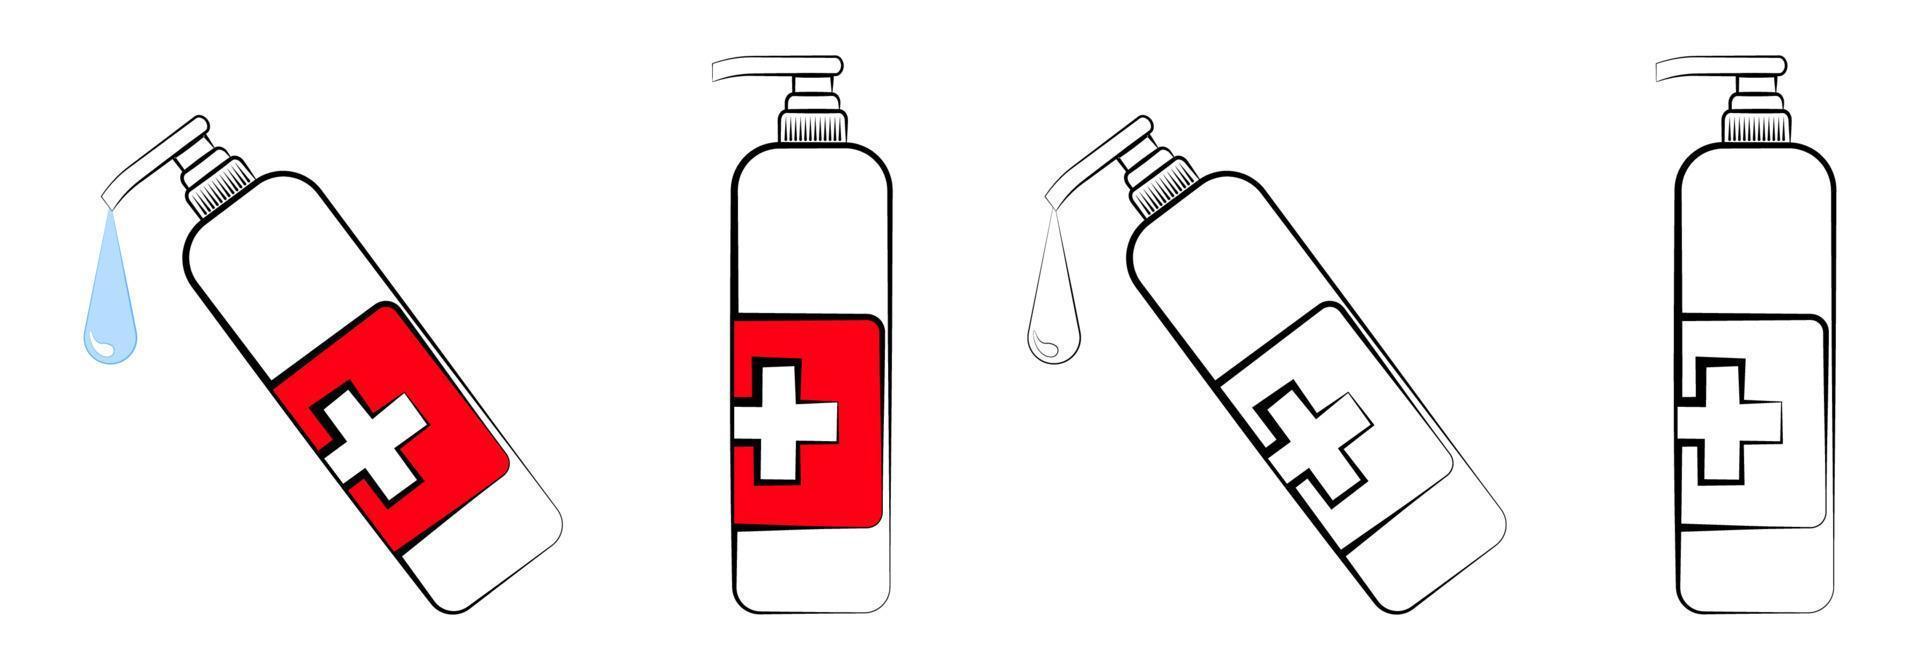 conjunto de iconos, botella de color y blanco y negro con jabón líquido. dosificador de desinfectante. mantener la higiene en una pandemia y la vida diaria. vector aislado sobre fondo blanco